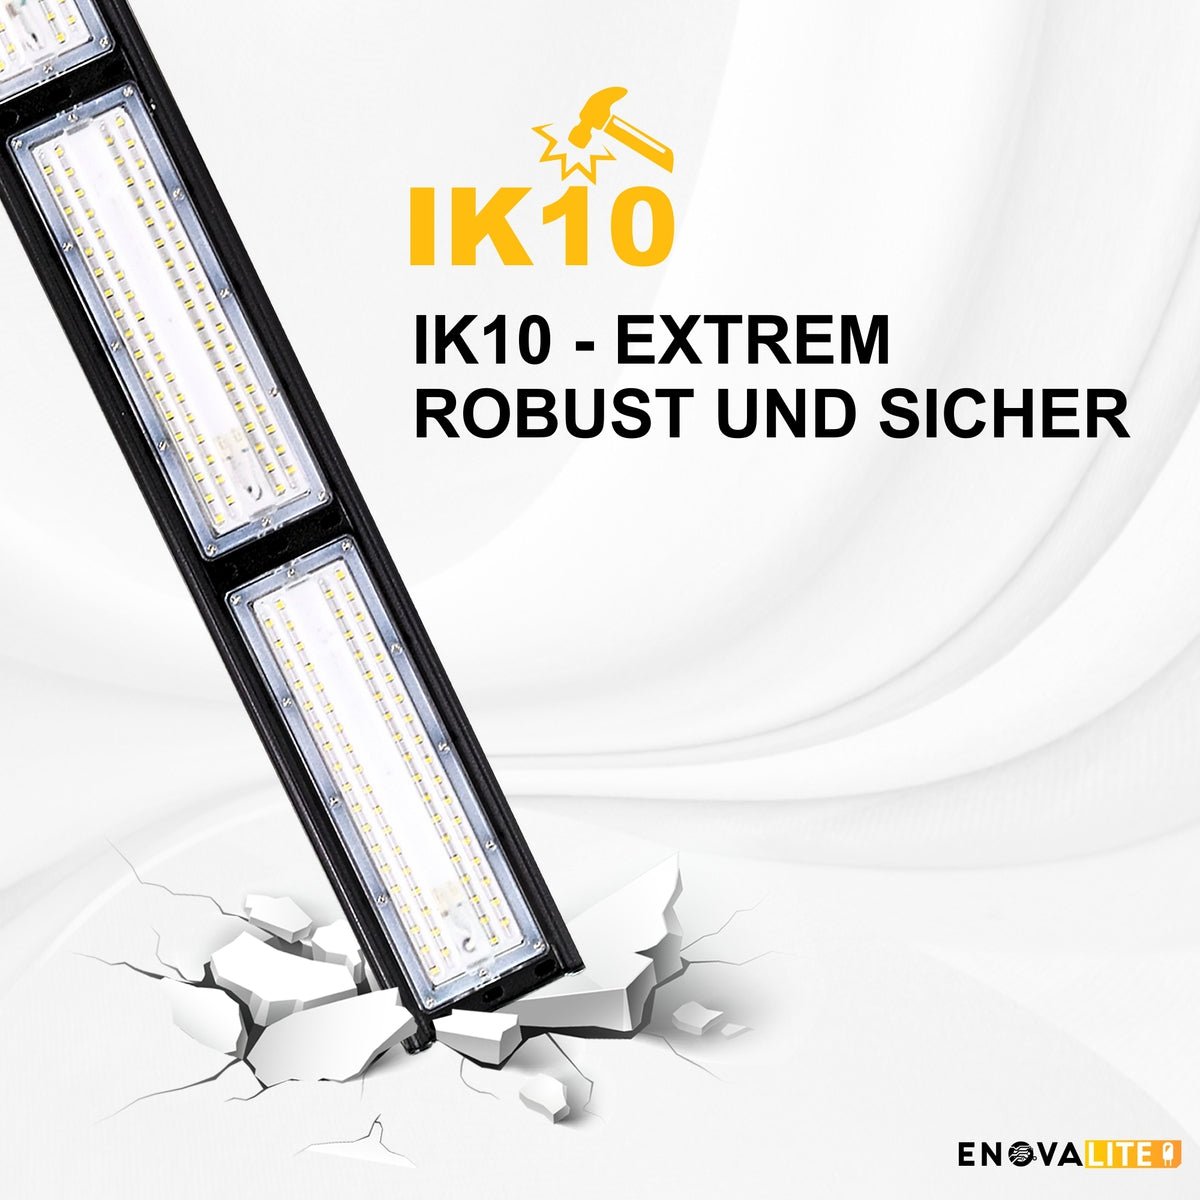 LED-HighBay, linear, 100 W, 12000 lm, 5000 K (neutralweiß), IP65, TÜV-geprüft, ENEC-Zertifizierung  Lichttechnik24.de.